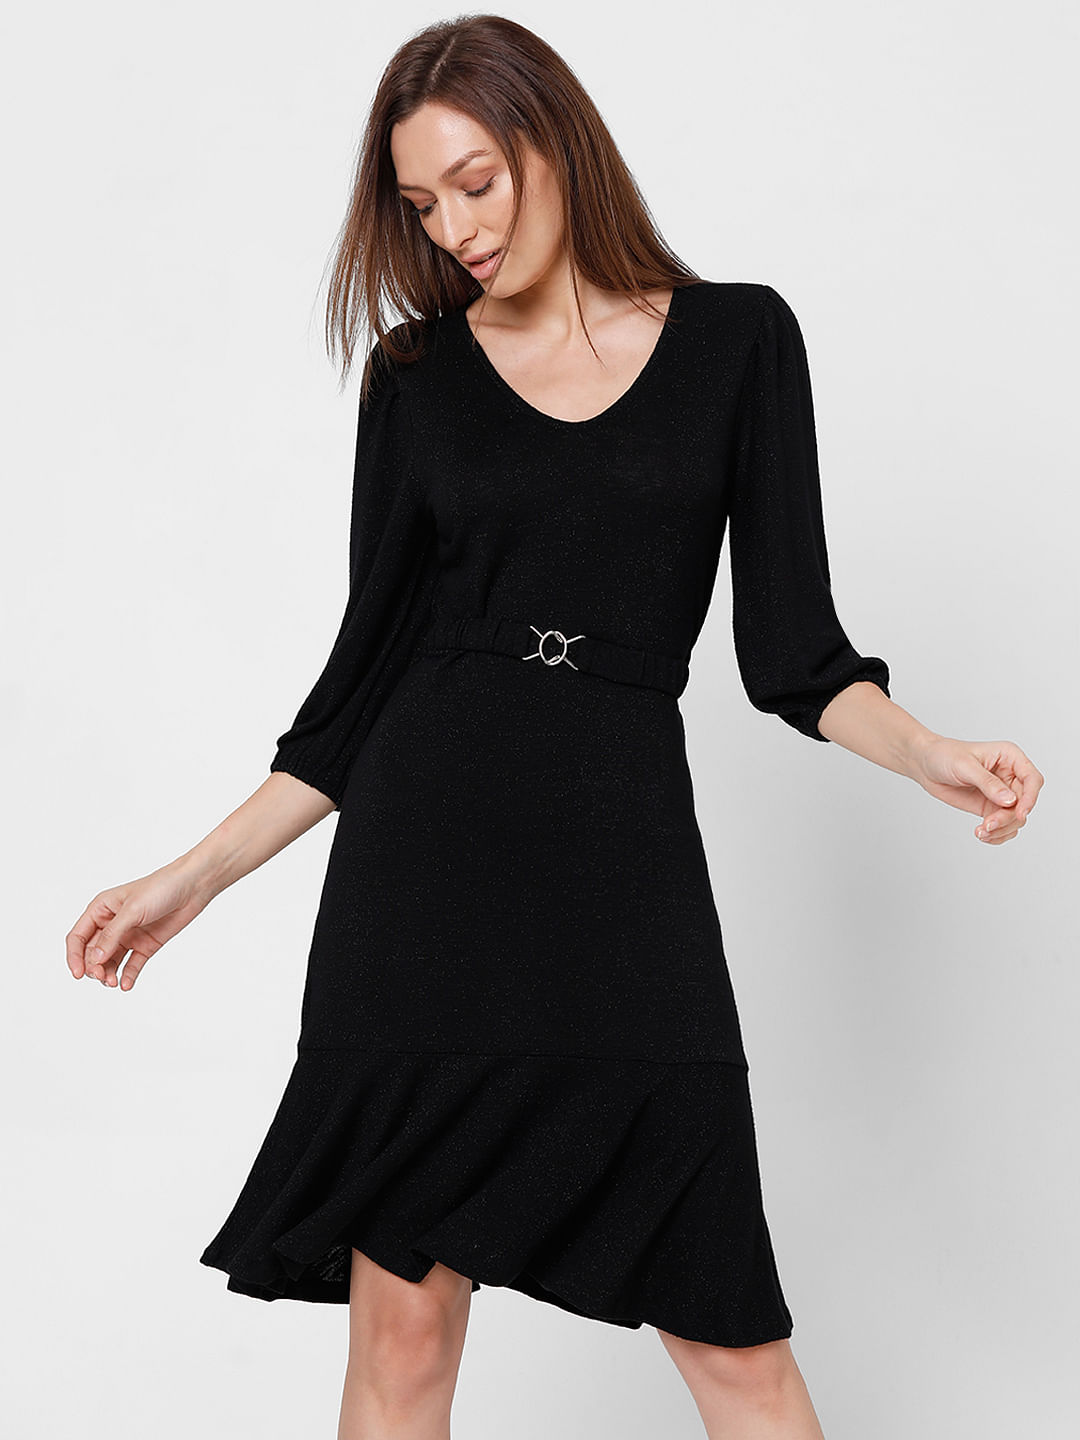 Buy Women Black Solid Knee Length Casual Dress Online - 815933 | Van Heusen